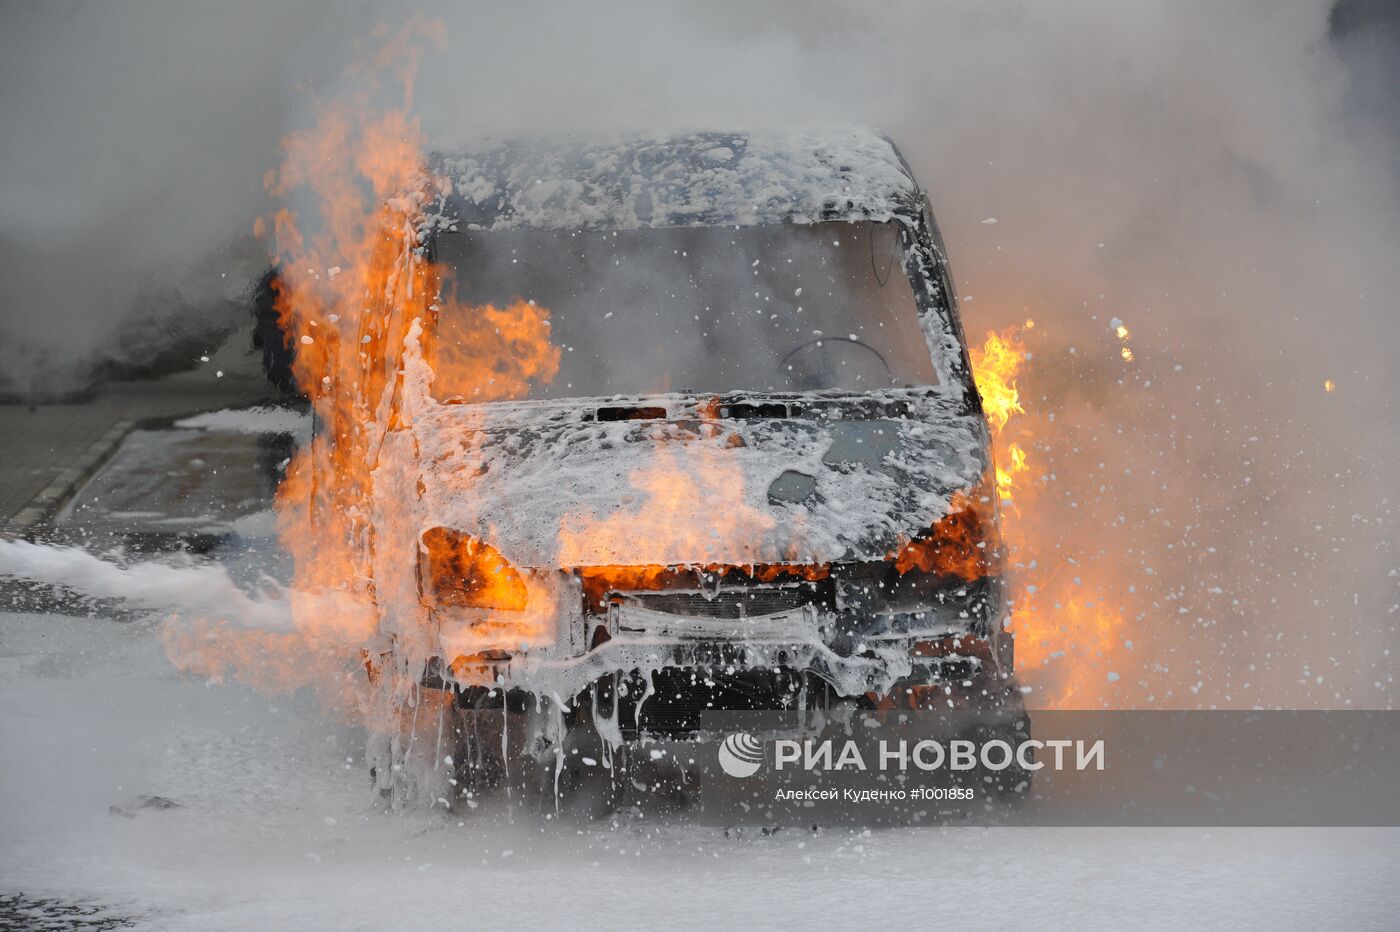 Автомобиль "Газель" загорелся на Киевском шоссе